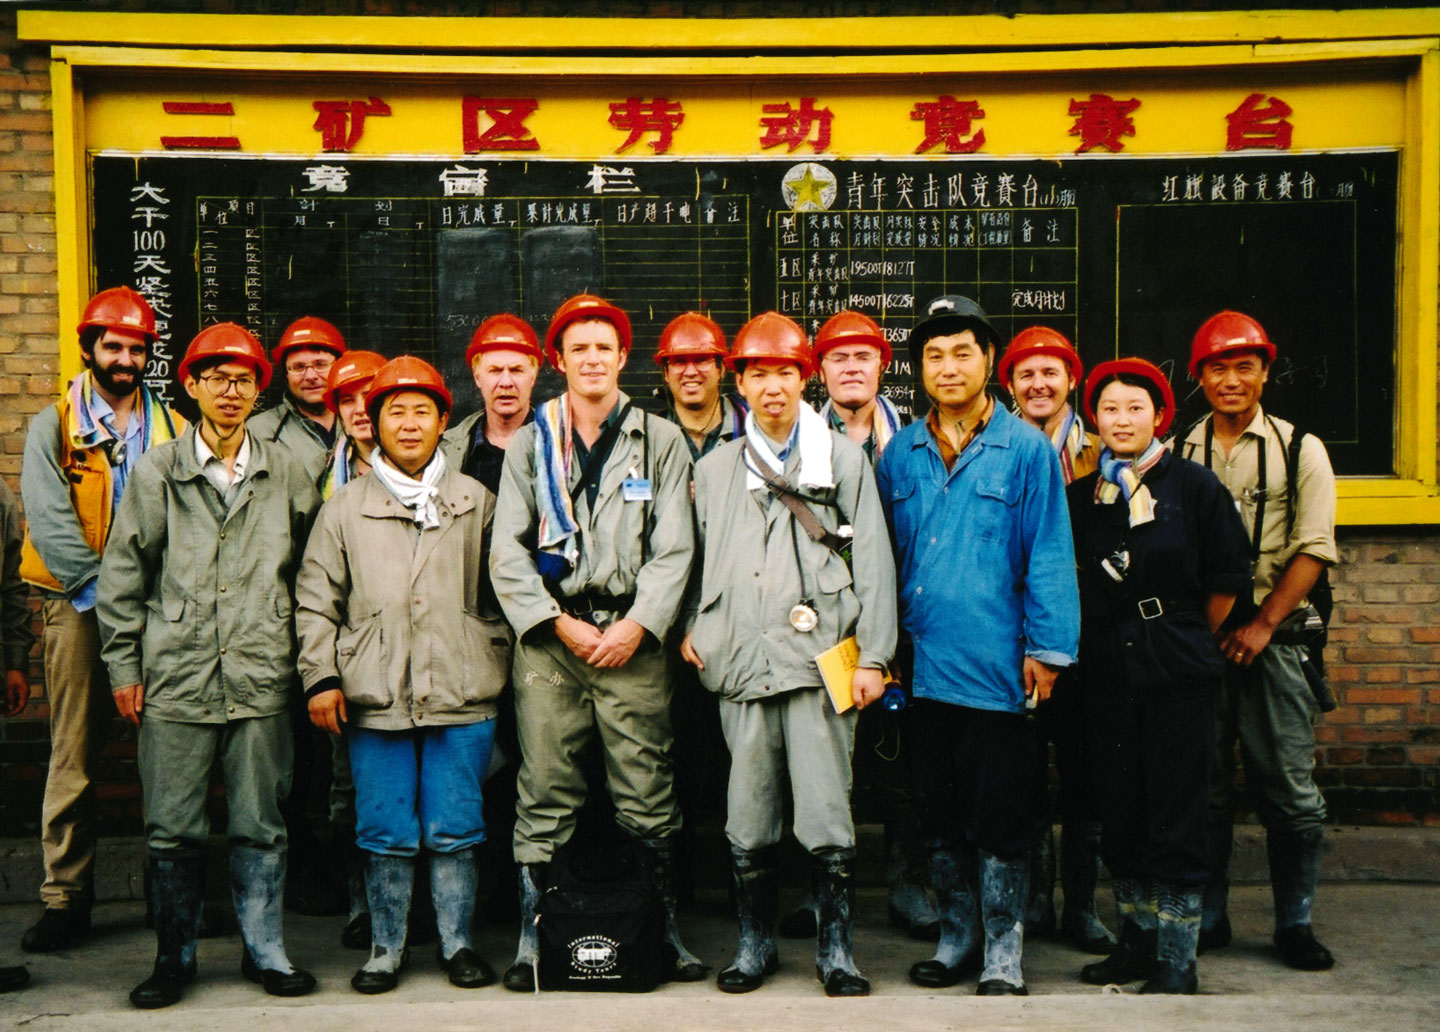 The Group at Jinchuan, China